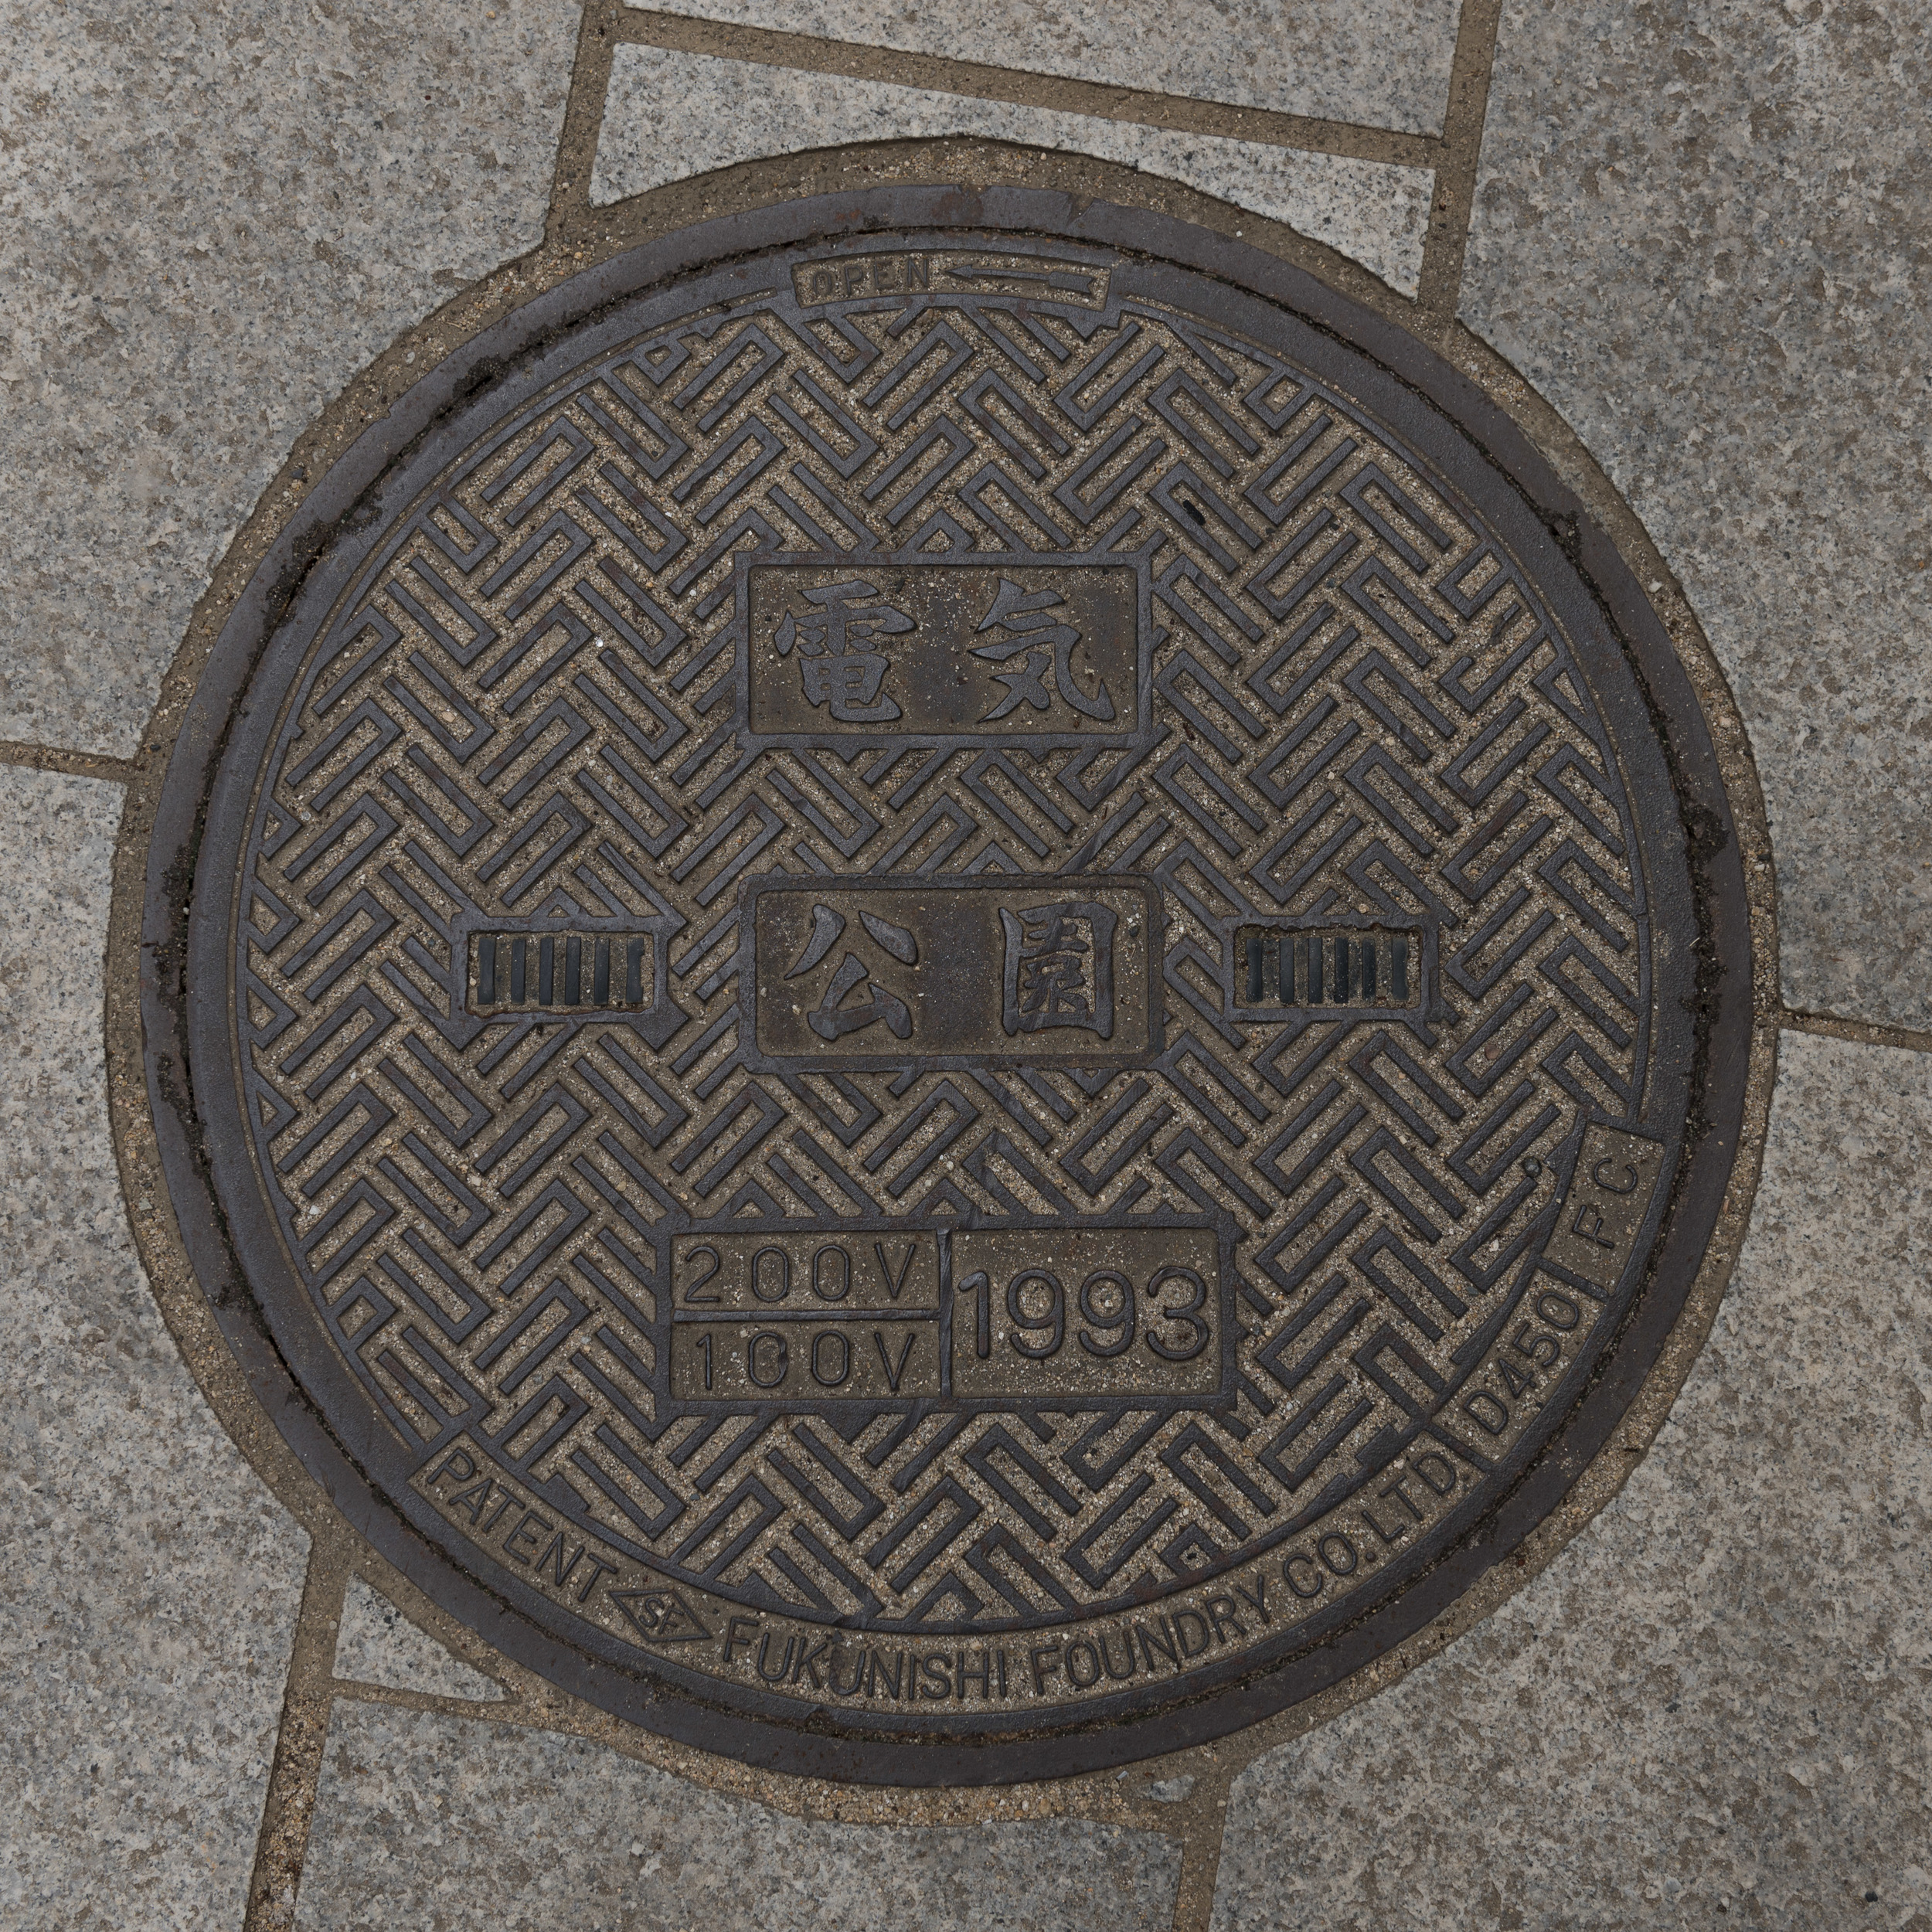 Japan_Manhole-4.jpg